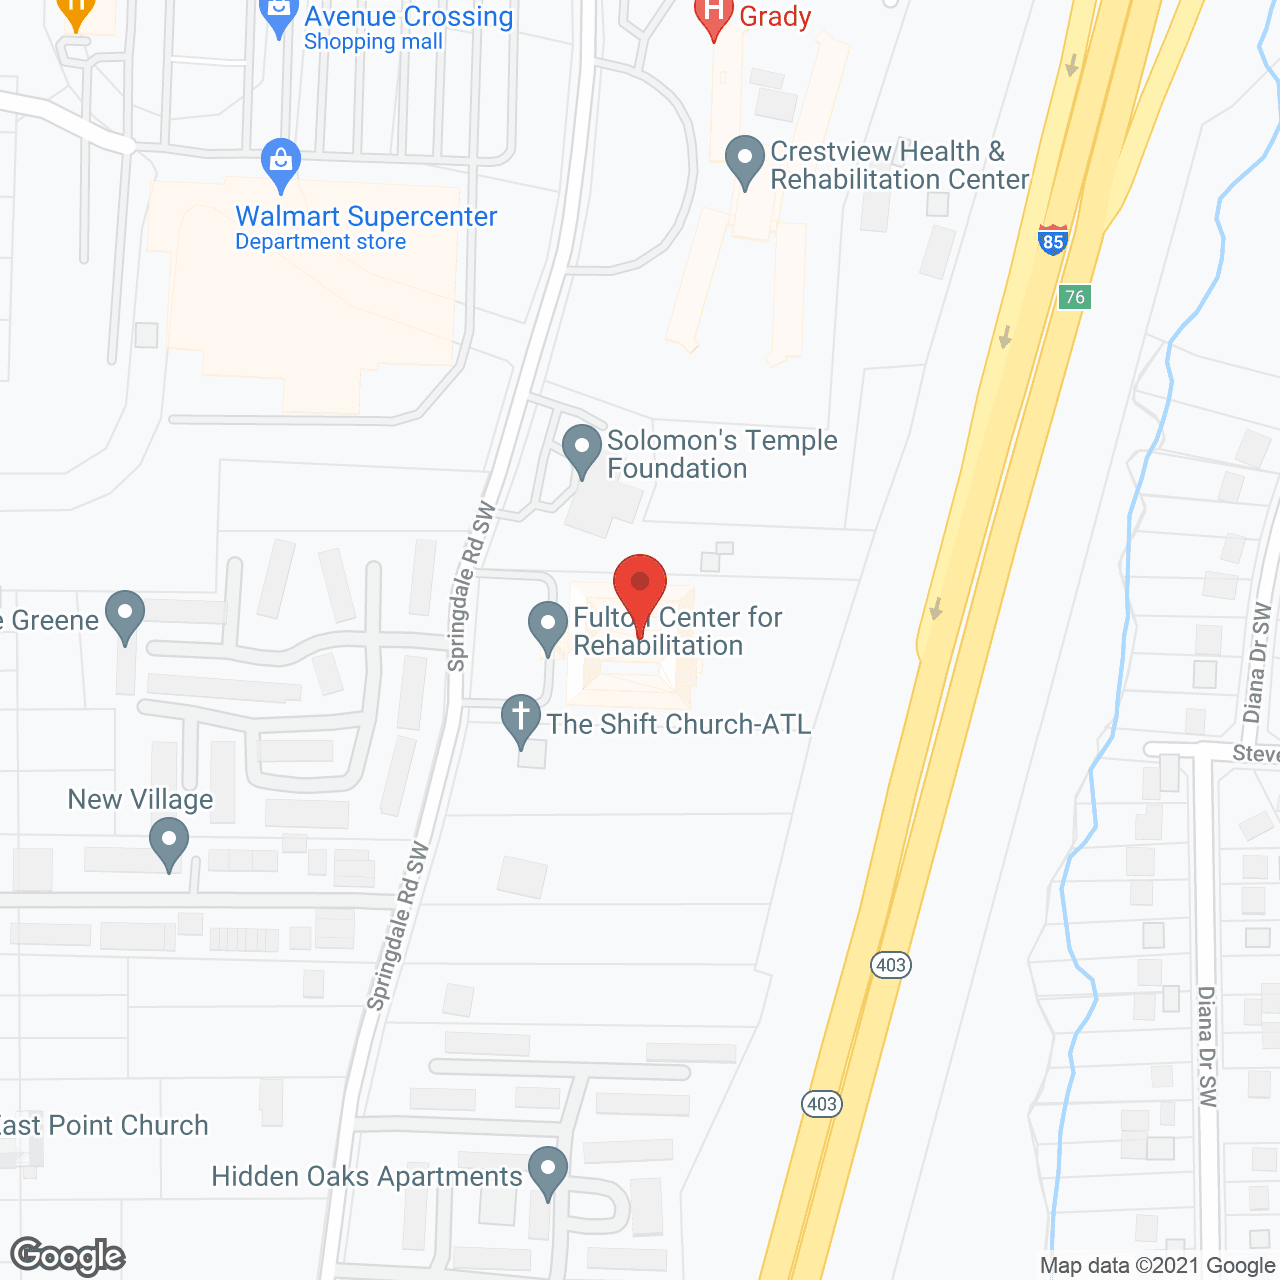 Fulton Center for Rehabilitation in google map